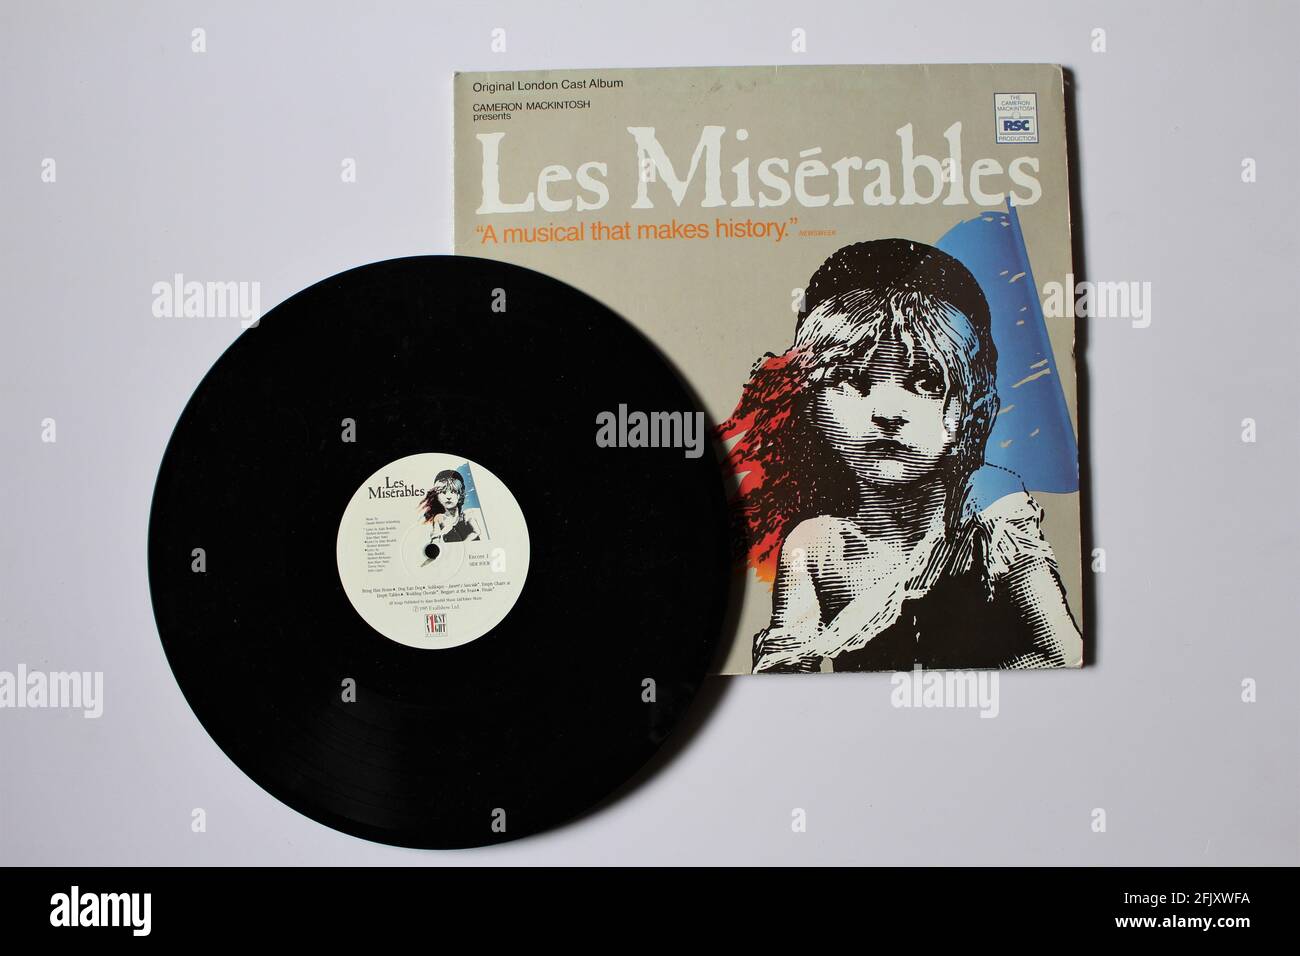 Les Misérables musical, original London cast album produced by Cameron Mackintosh. Soundtrack  on vinyl record LP disc album. Stock Photo